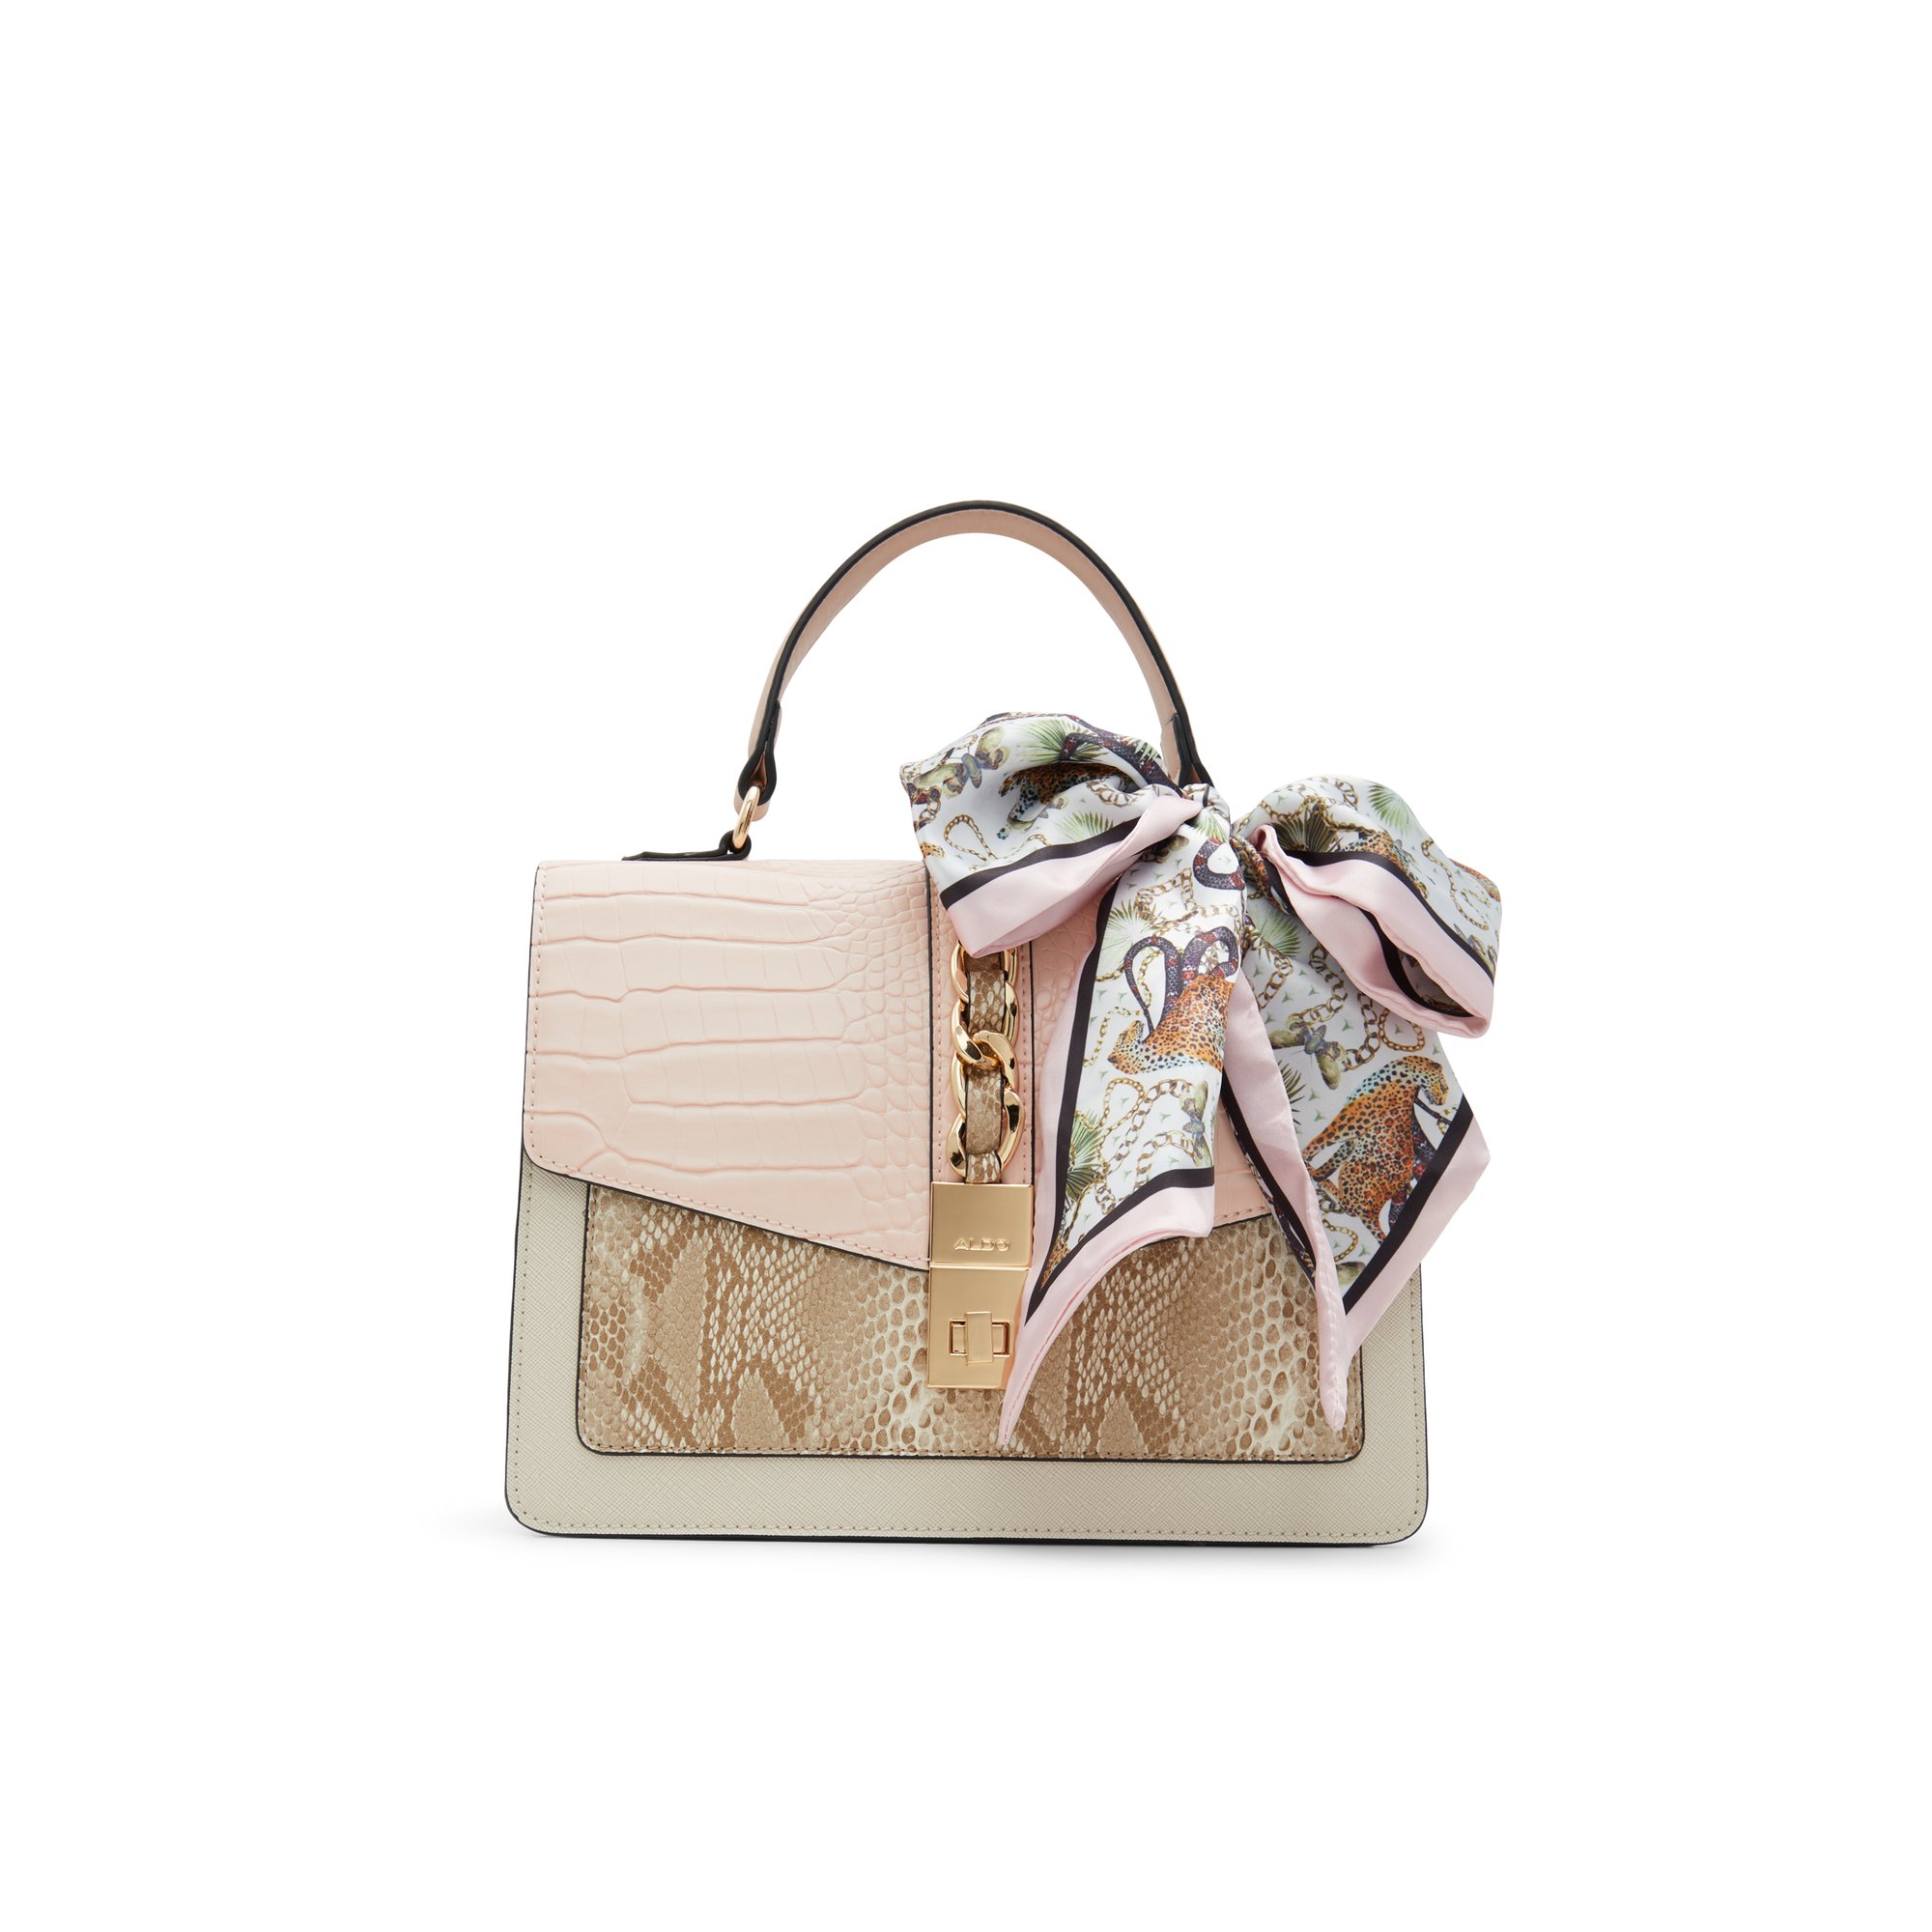 ALDO Caiillaa - Women's Top Handle Handbag - Pink